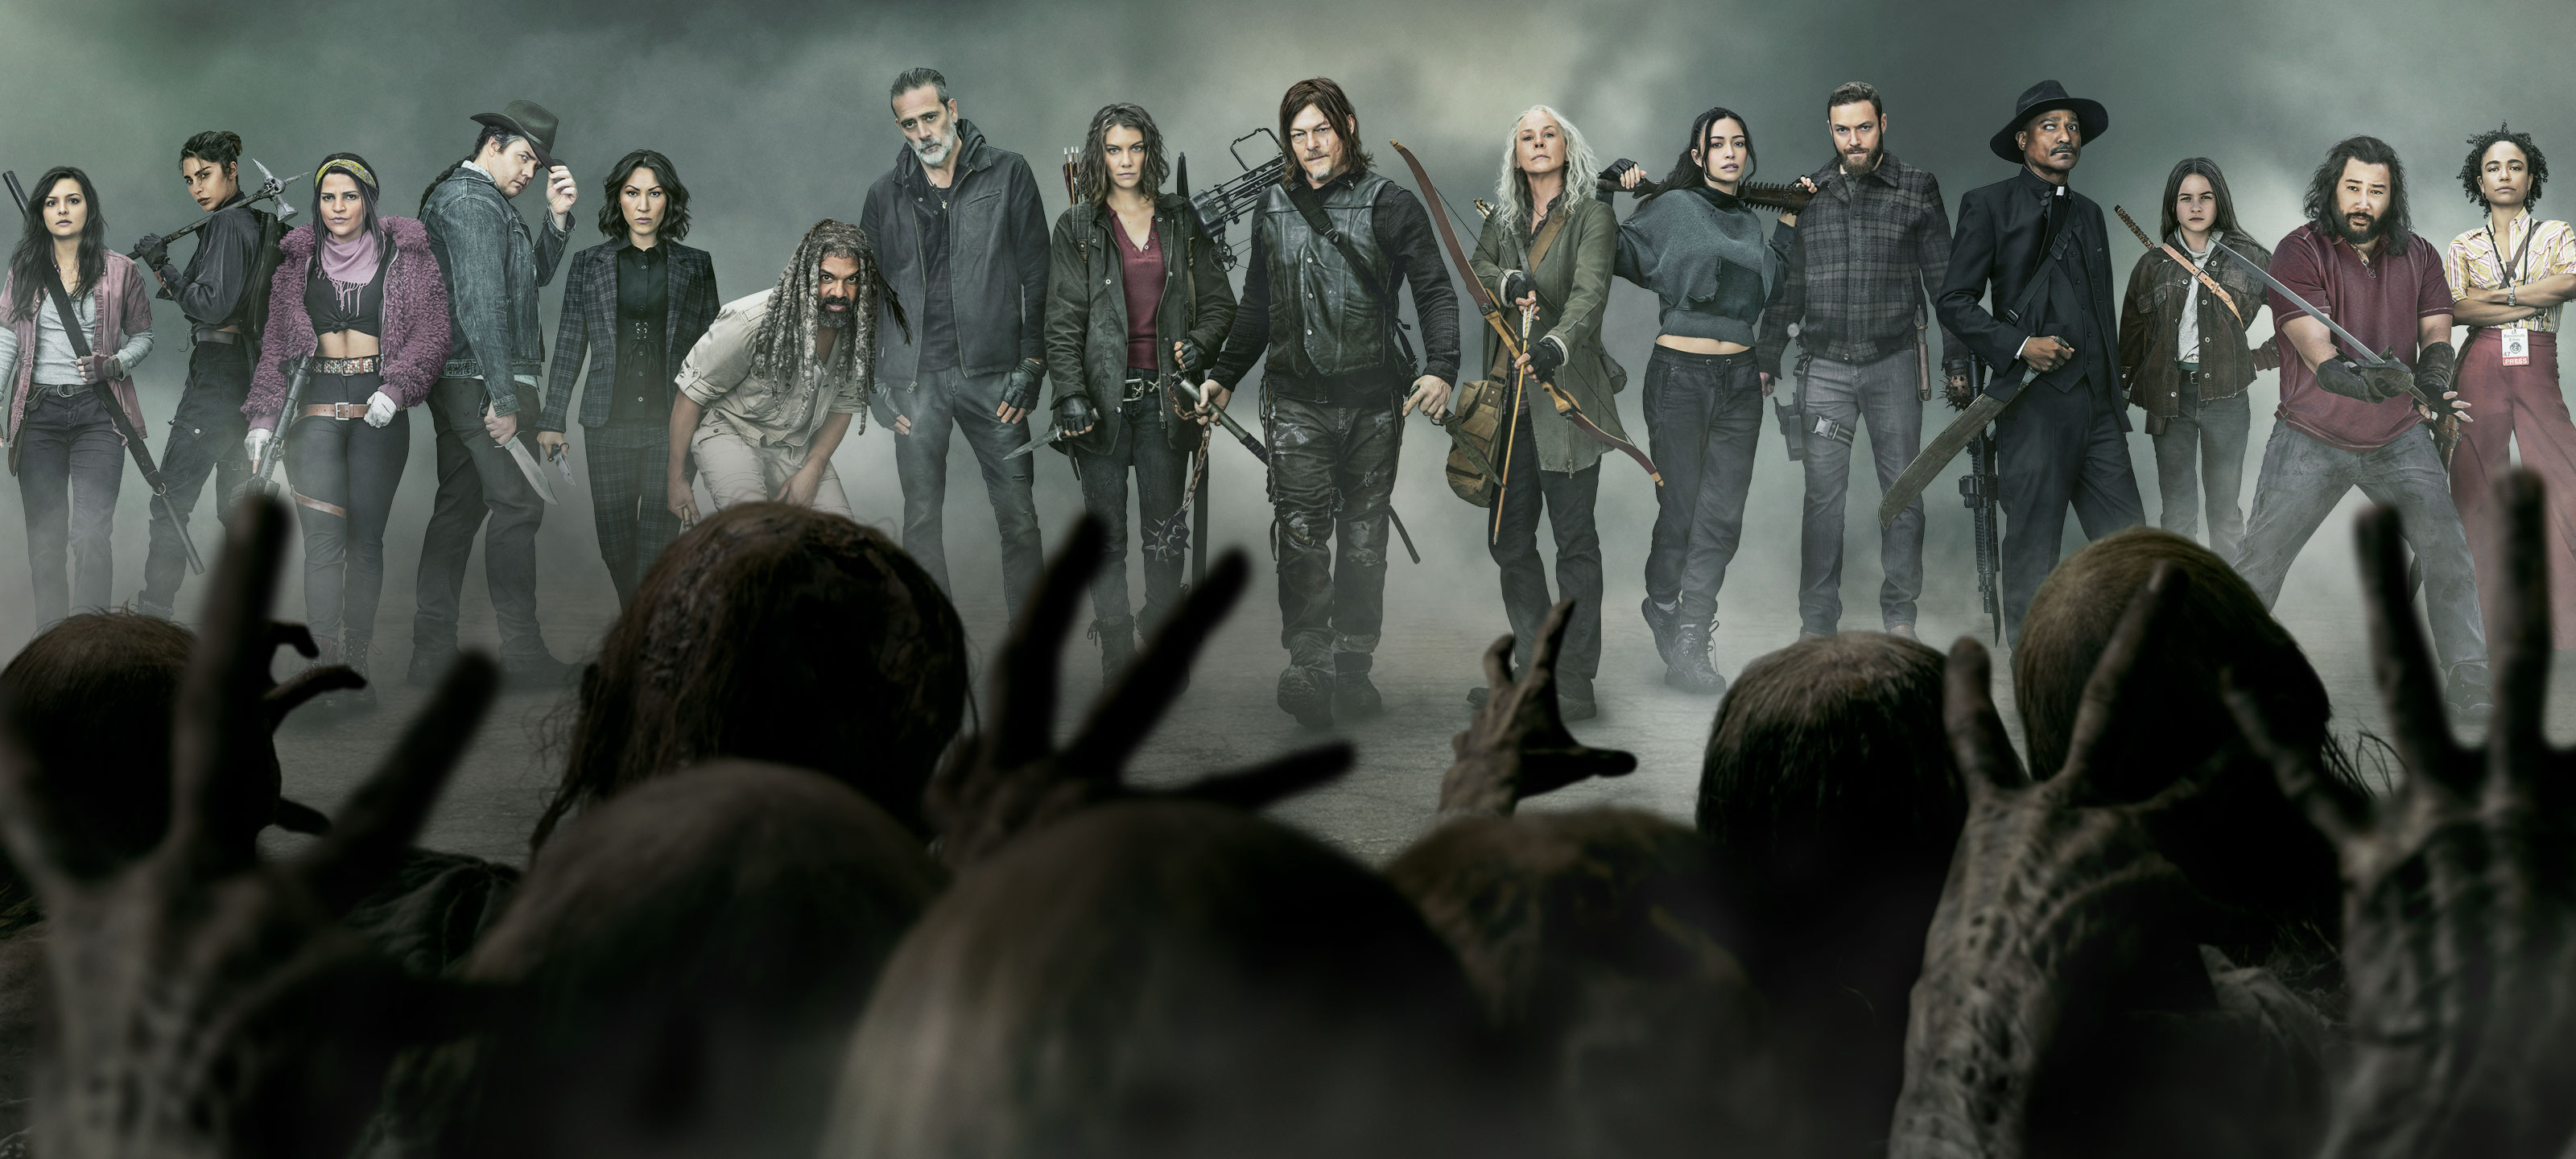 Nietje lucht Leia Watch The Walking Dead Season Online | AMC